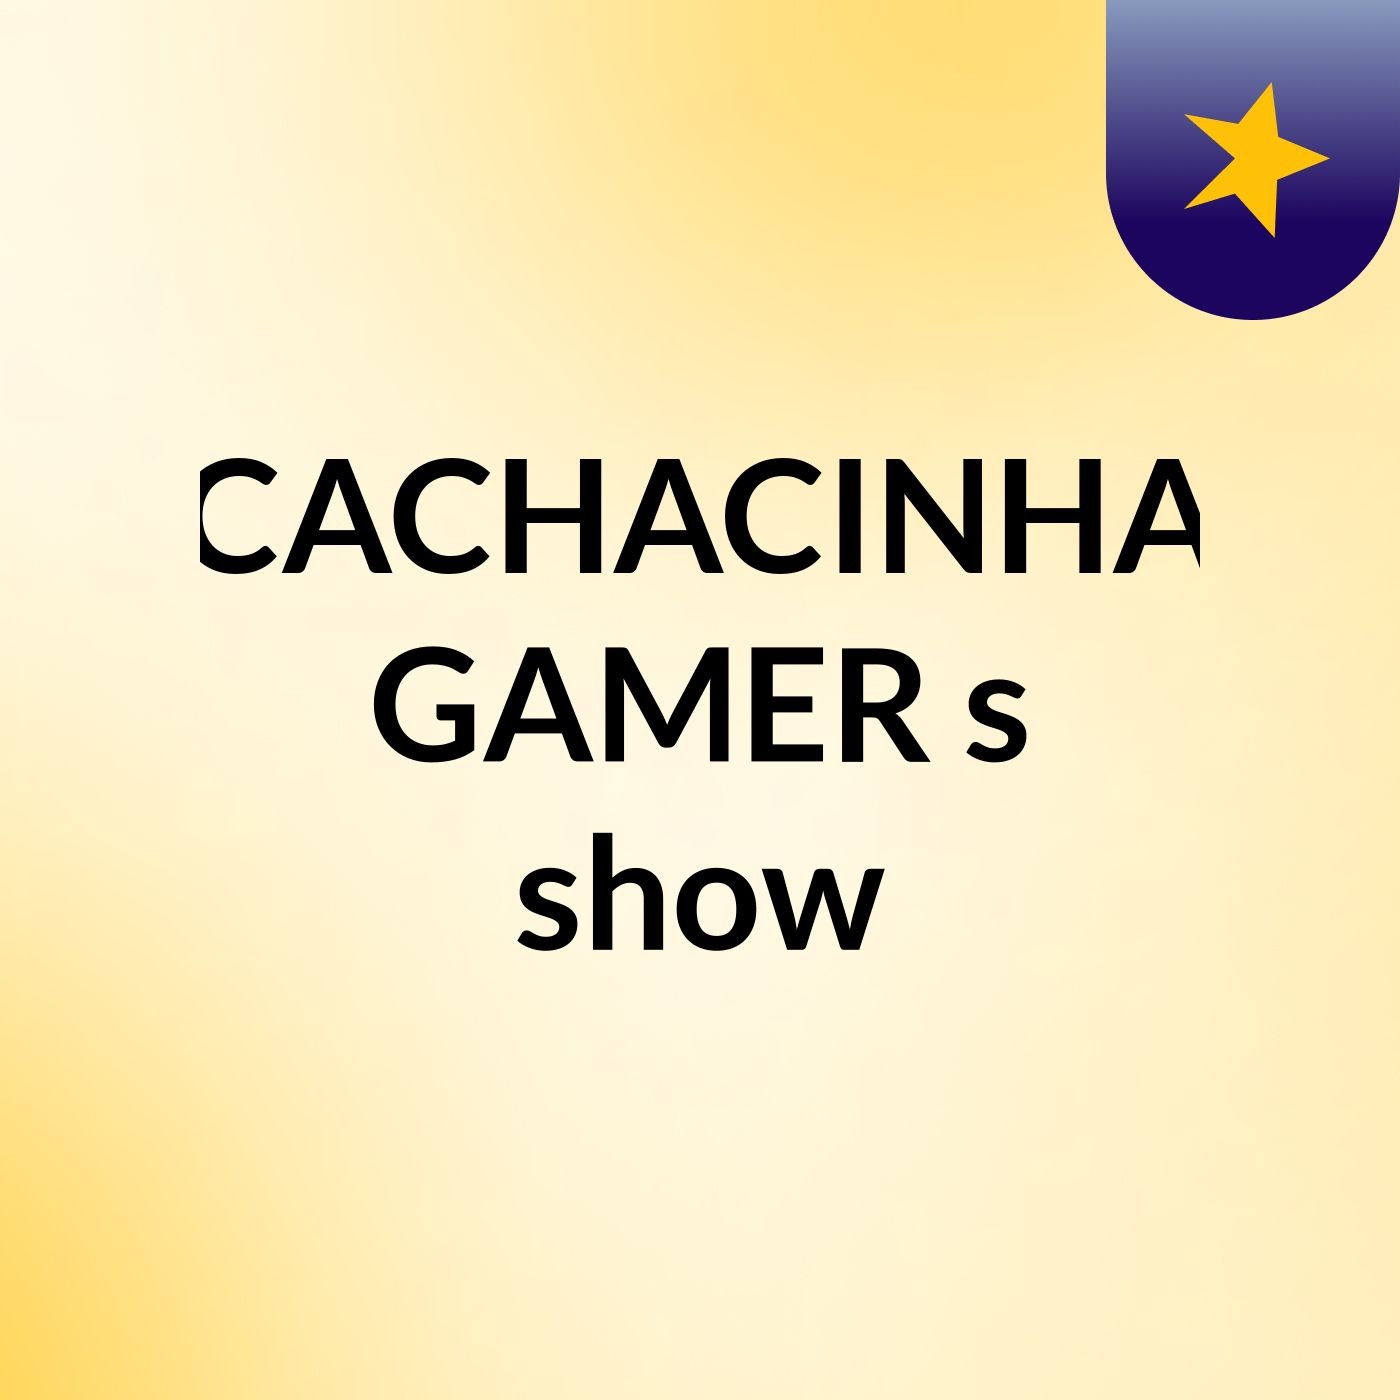 CACHACINHA GAMER's show